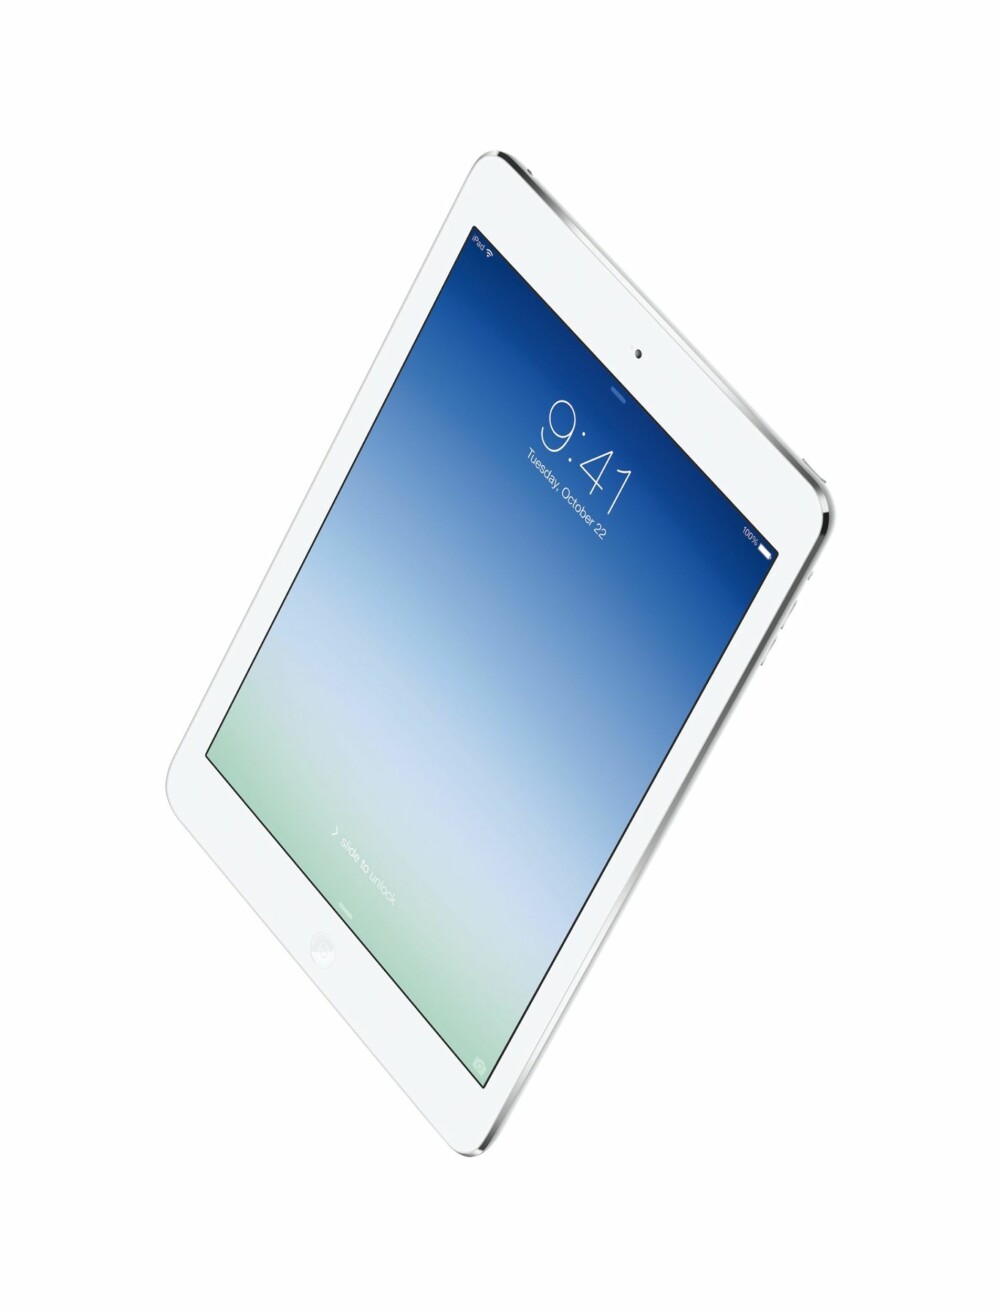 LUFTIG: Med 450 gram er iPad Air det letteste nettbrettet med ""fullskjerm"" ifølge Apple.